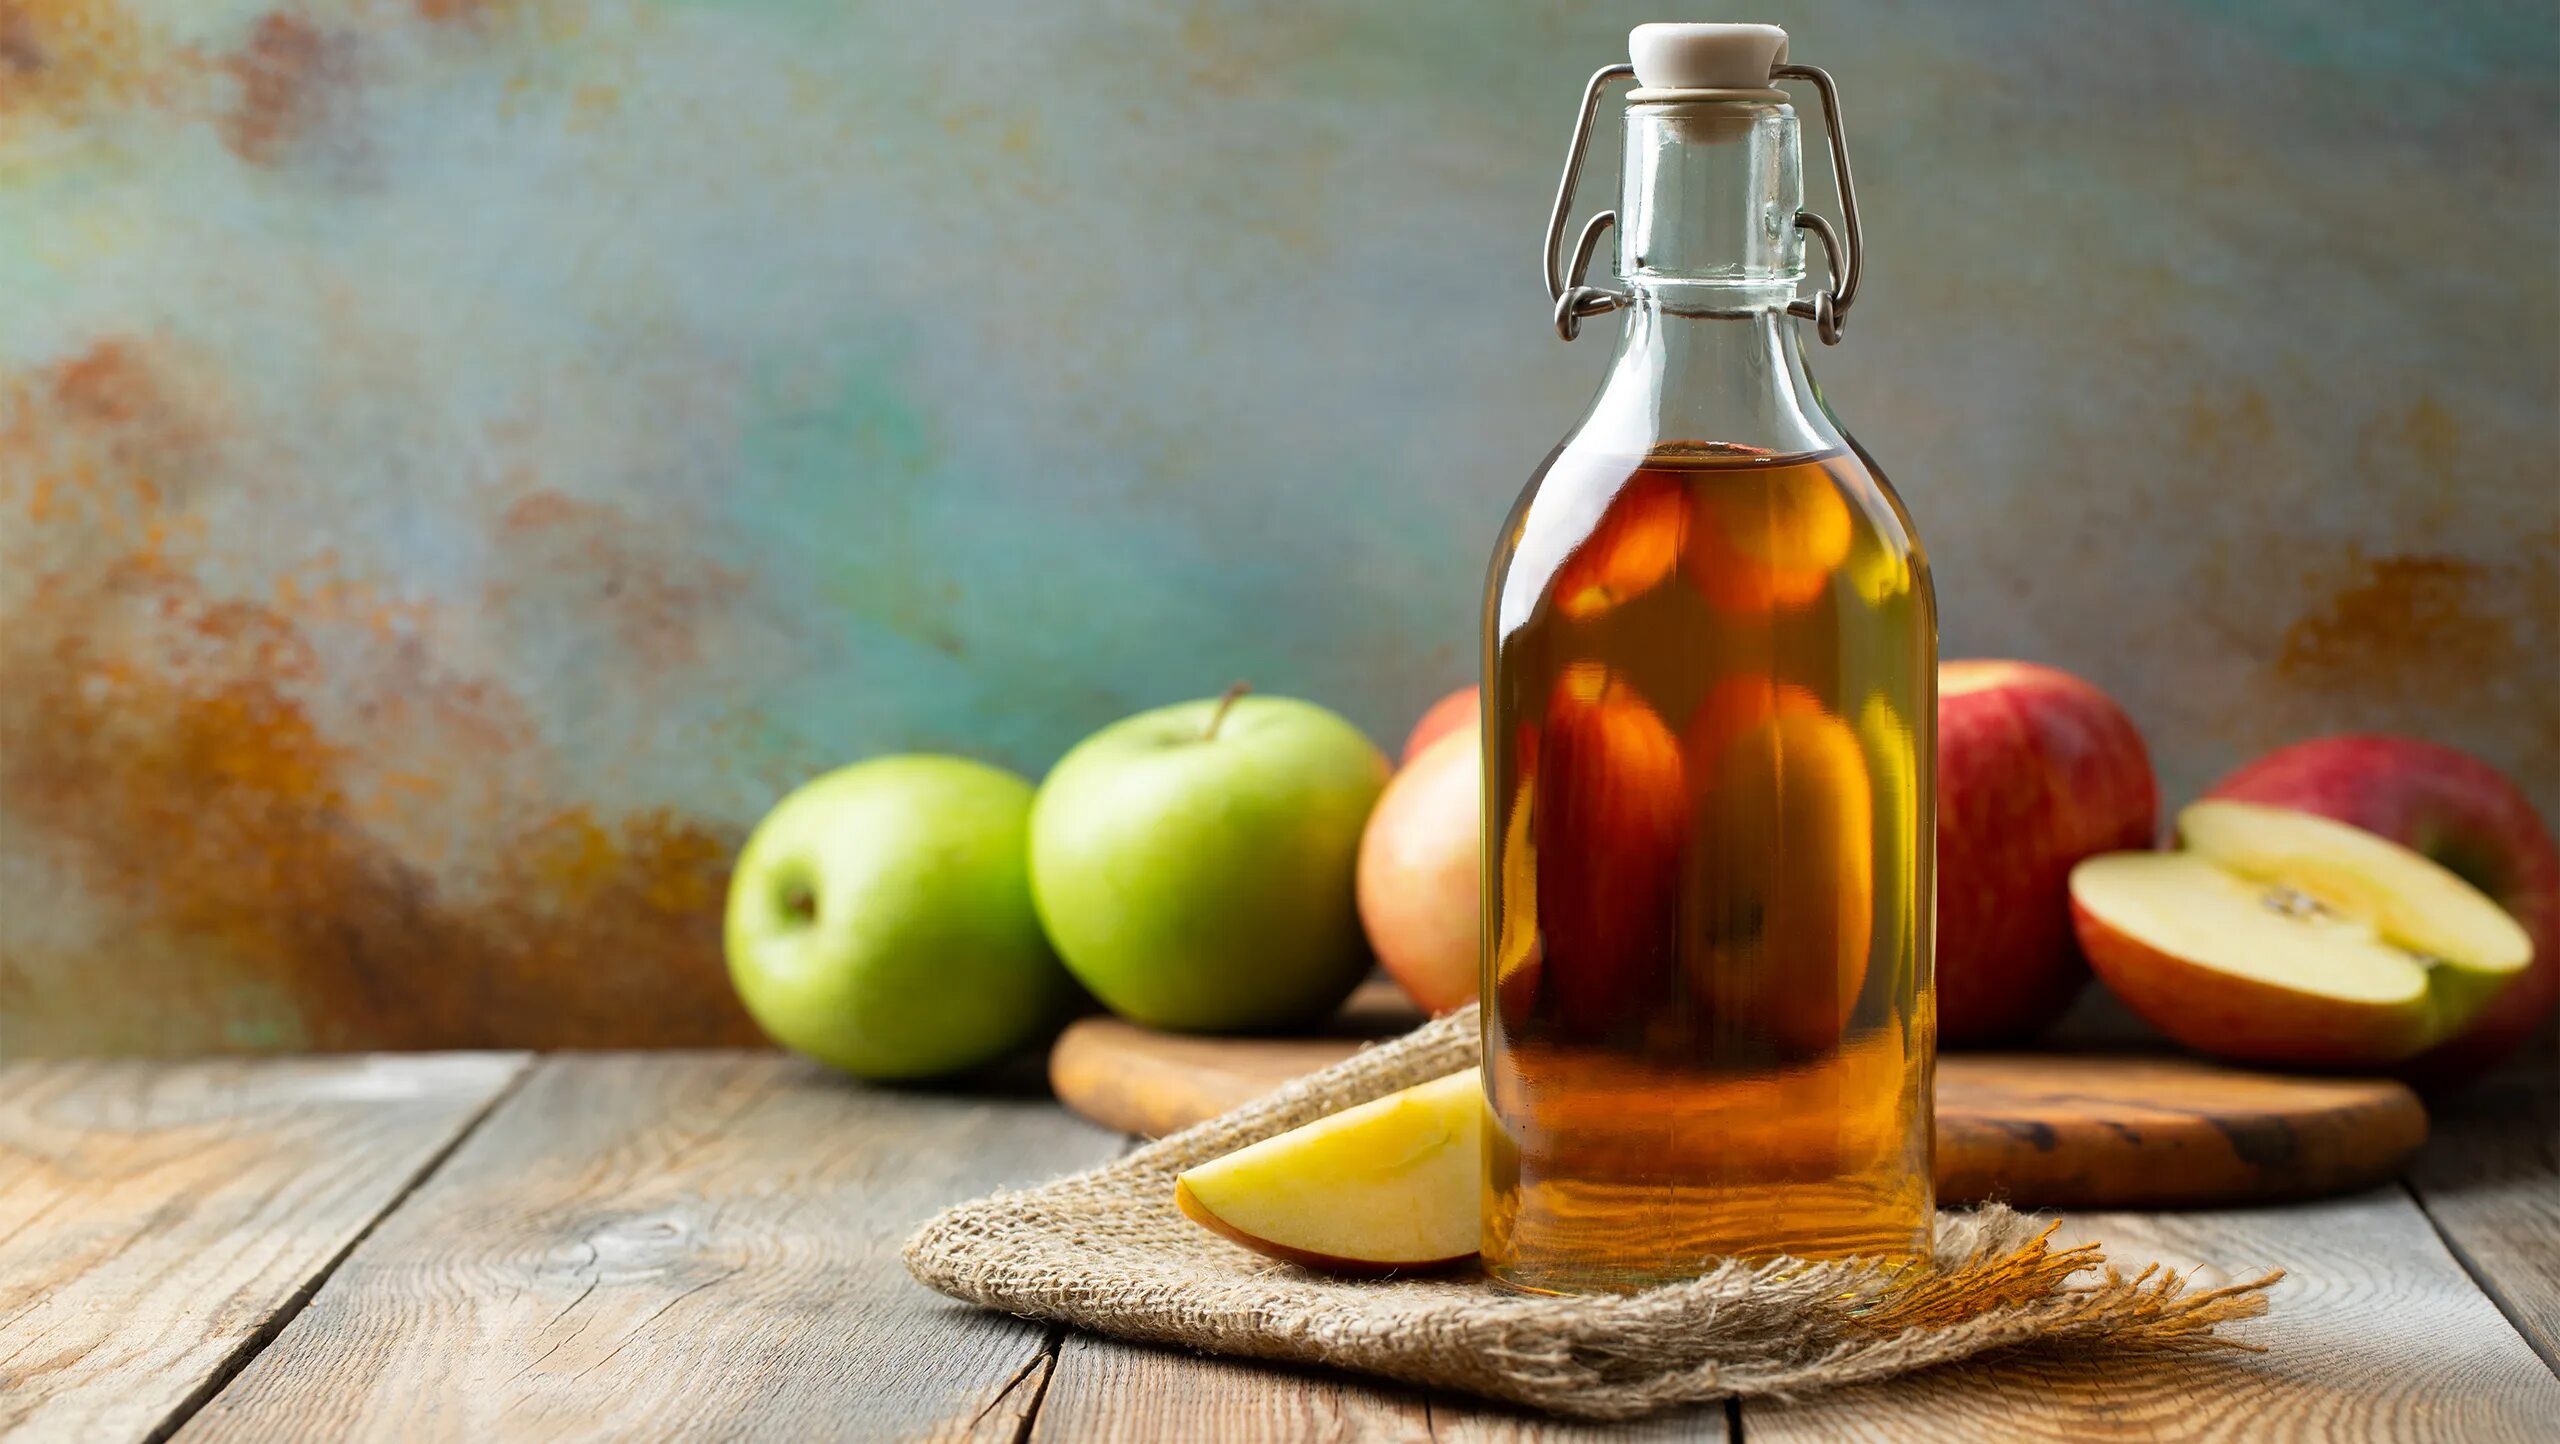 Вода с яблочным уксусом и медом. Яблочный уксус Elma Sirkesi. Уксус Apple Cider Vinegar. Уксус яблочный сидр. Яблочный уксус бутылка.